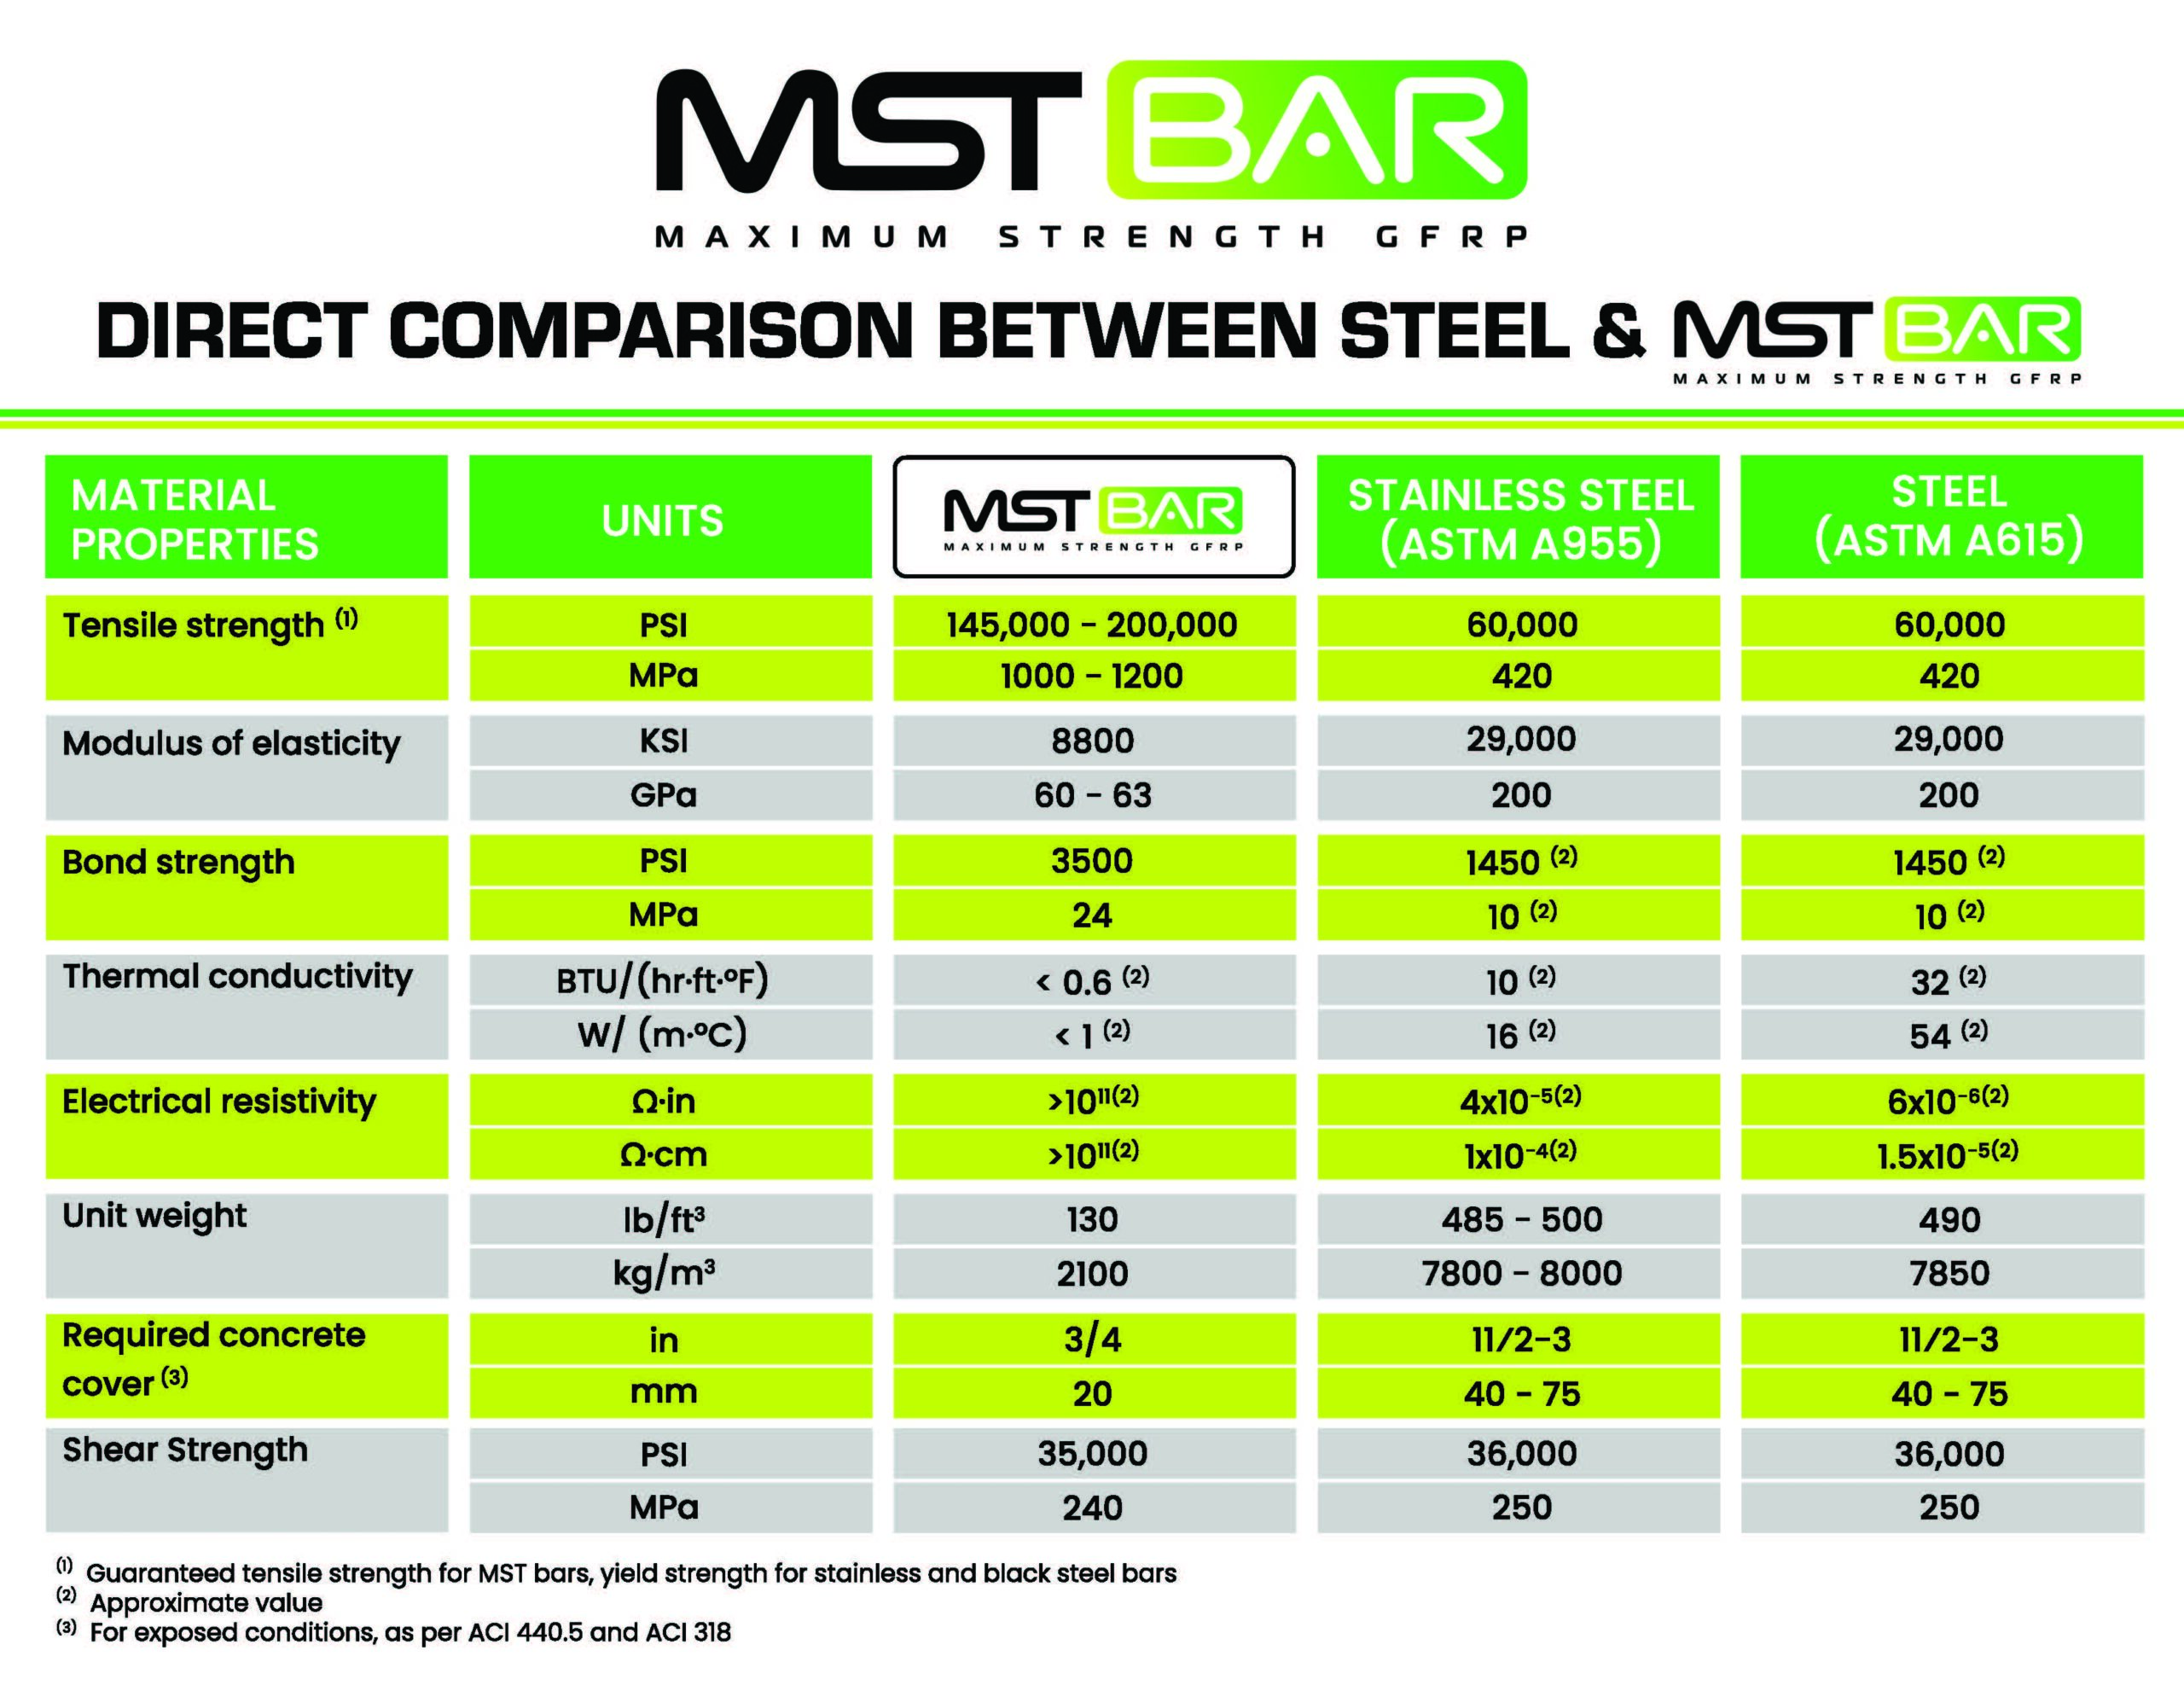 MST Bar vs STEEL v3